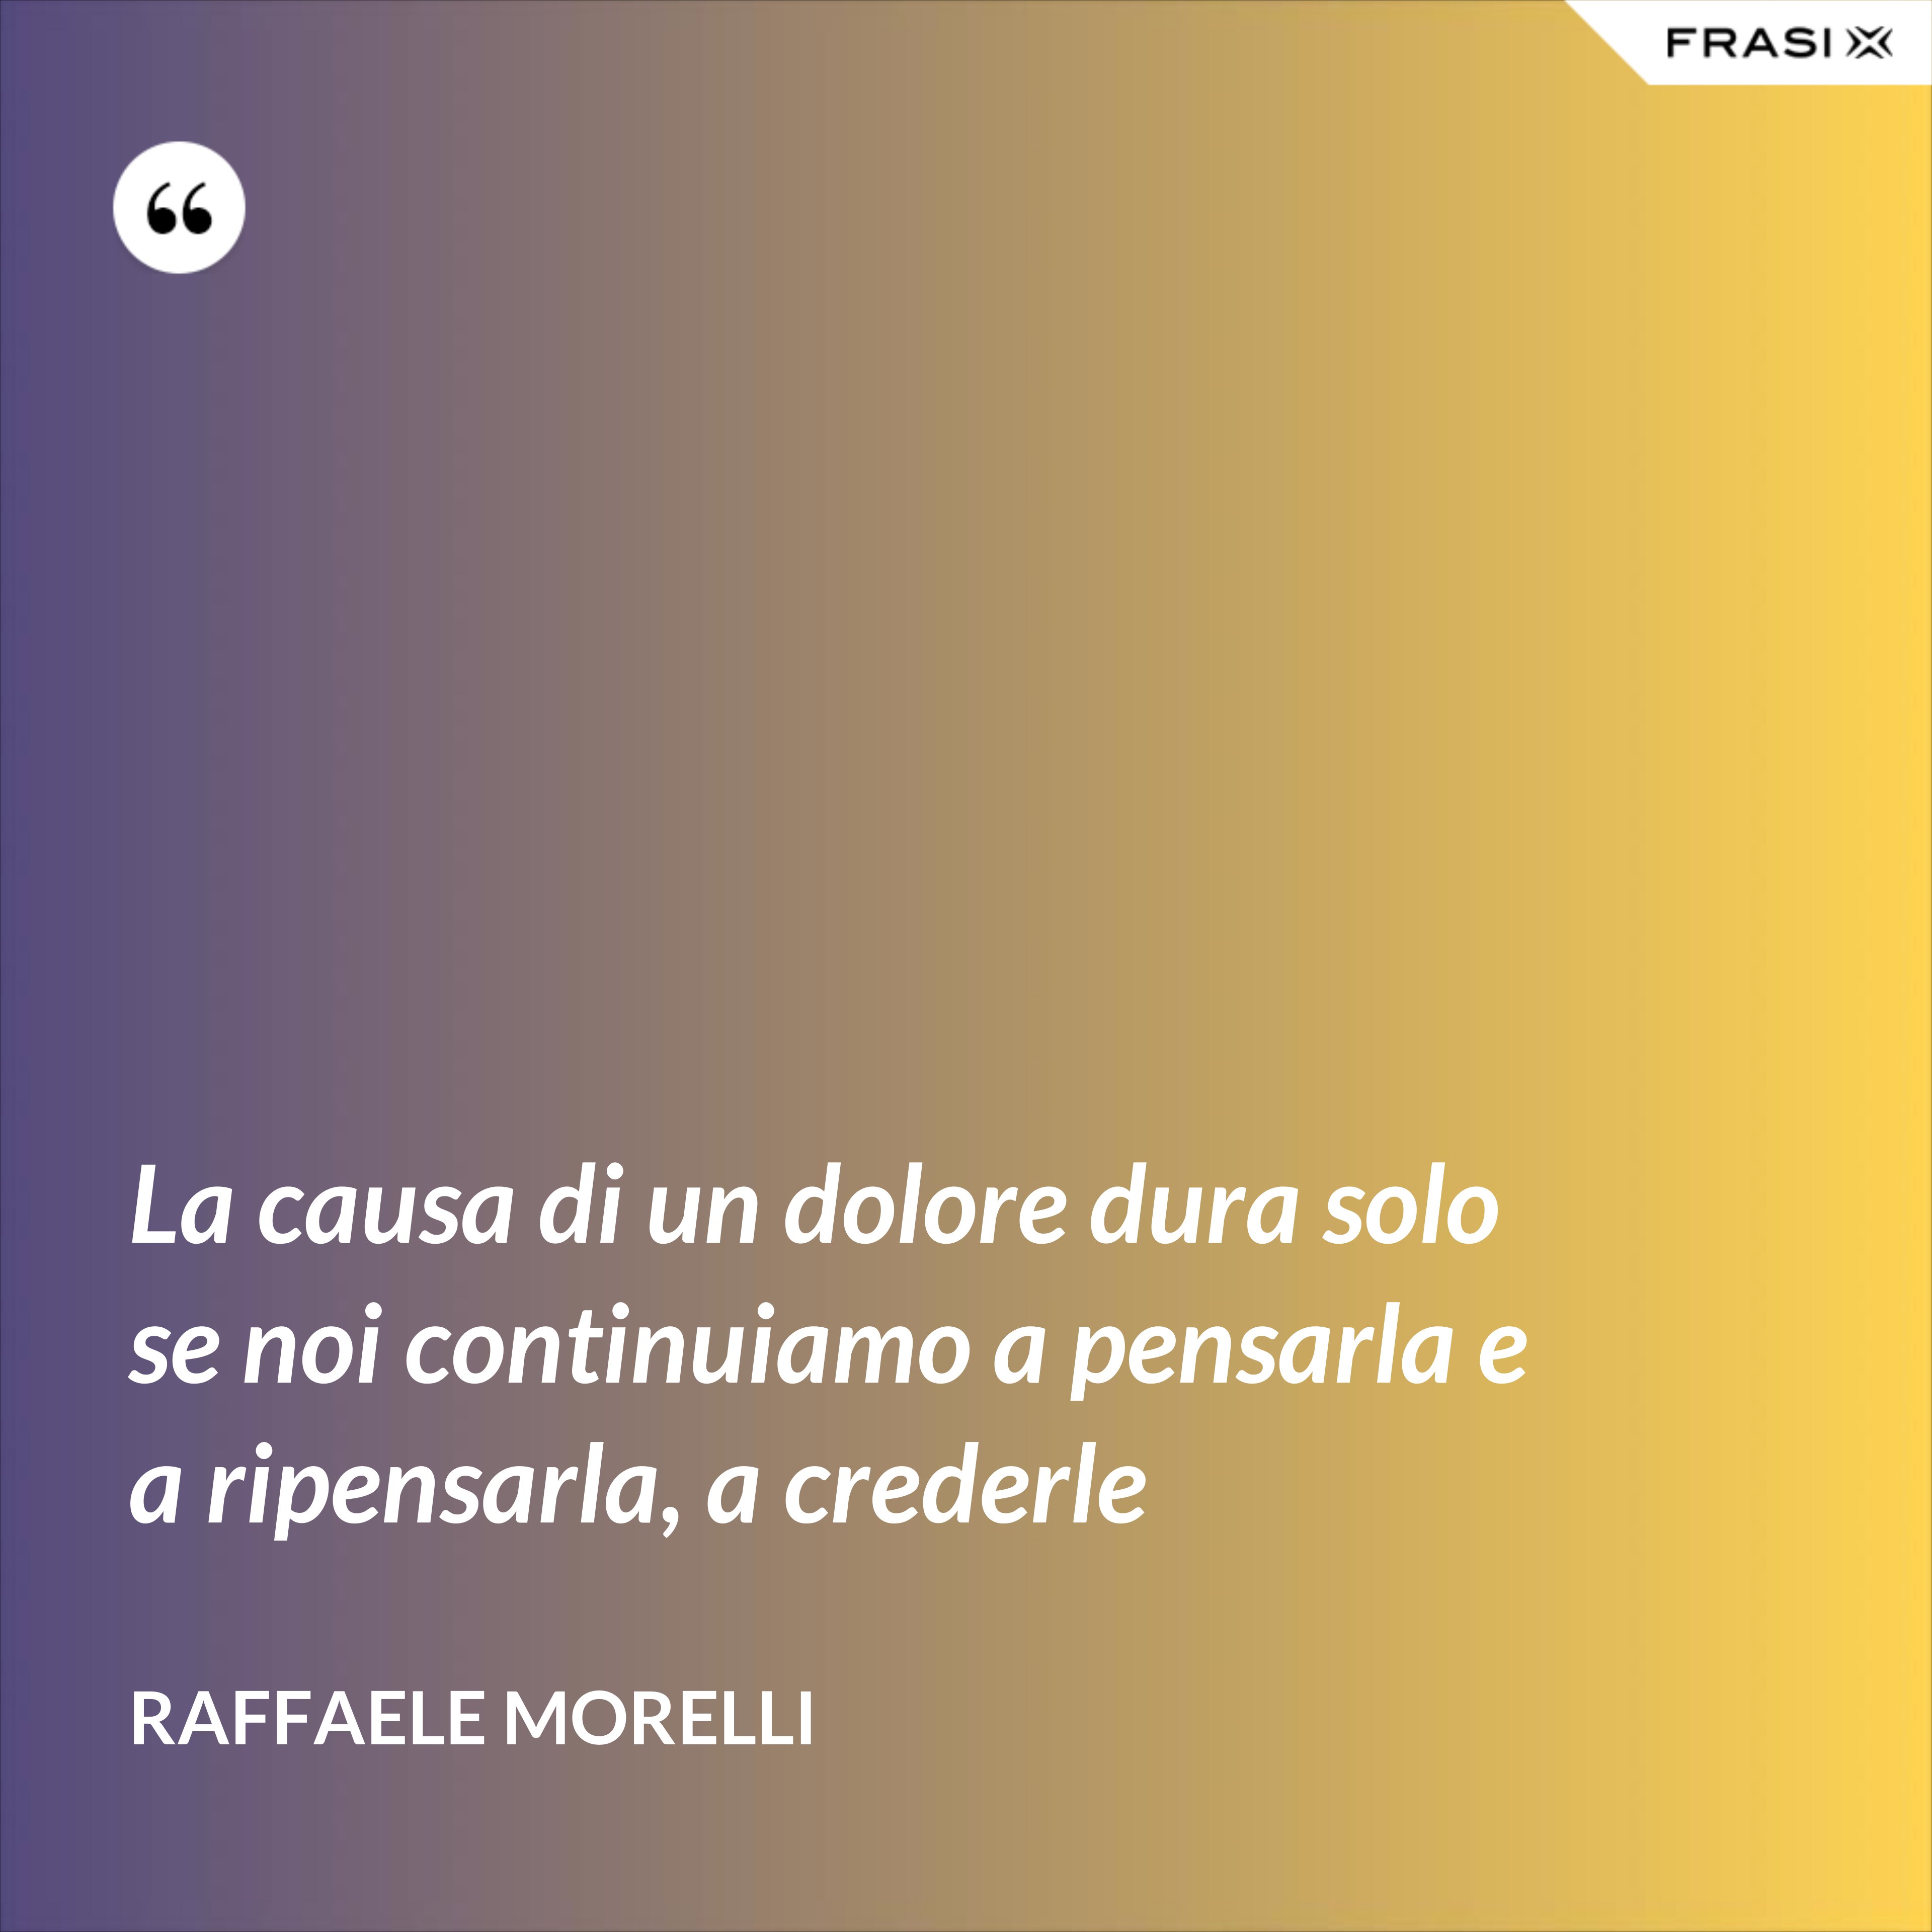 La causa di un dolore dura solo se noi continuiamo a pensarla e a ripensarla, a crederle - Raffaele Morelli